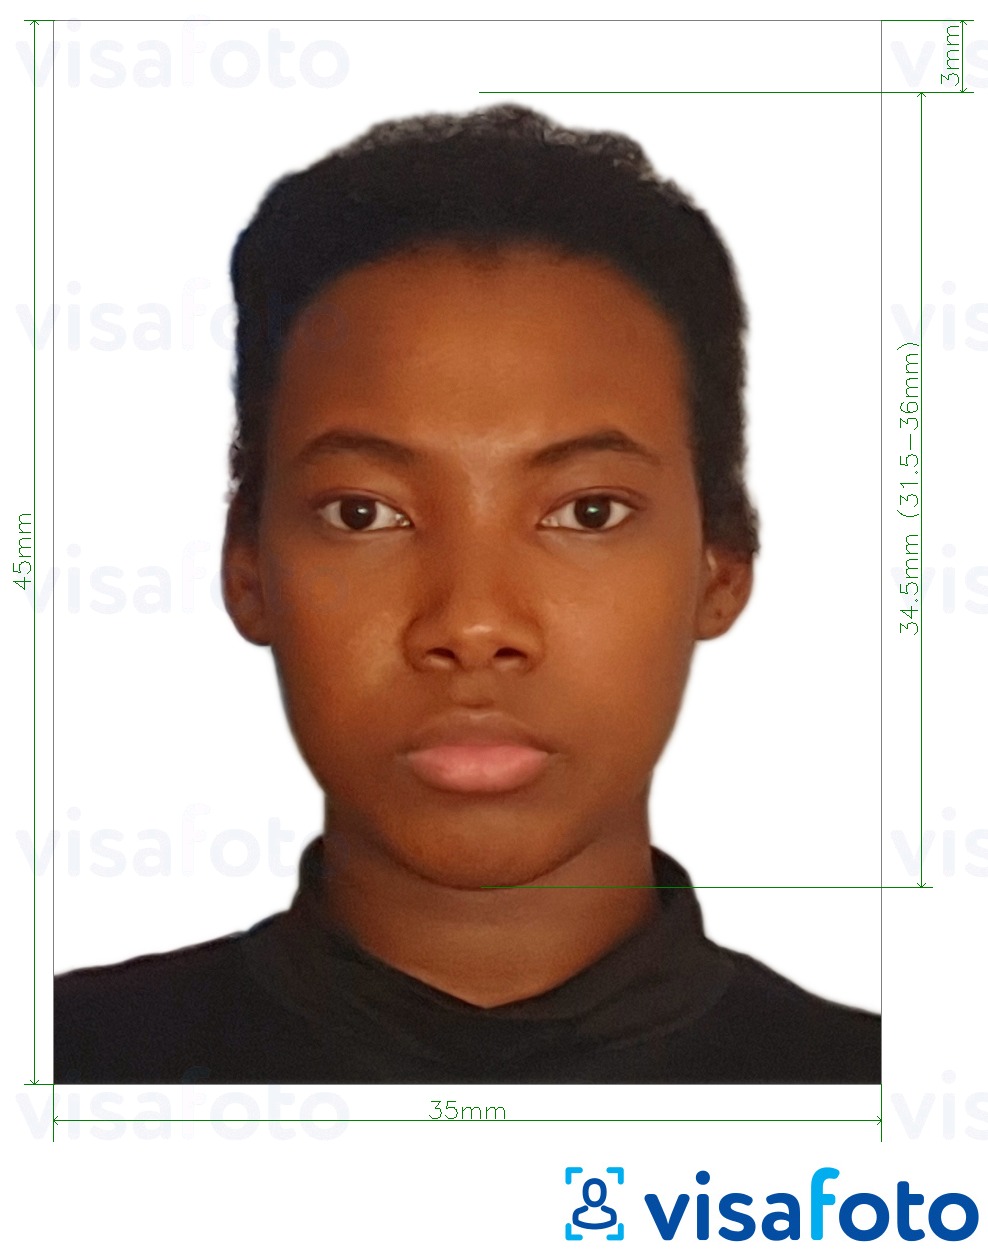 Contoh foto untuk Benin visa 3.5x4.5 cm (35x45 mm) dengan spesifikasi saiz yang tepat.